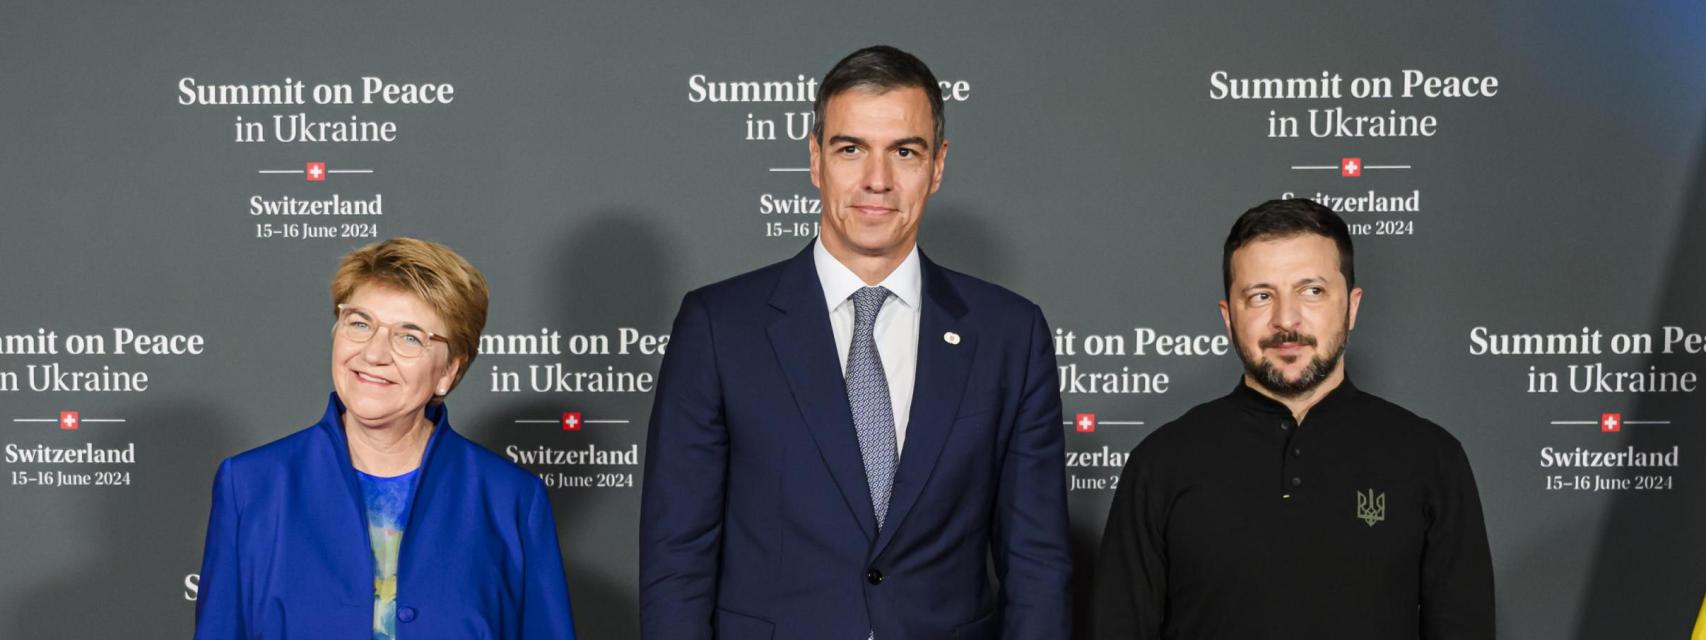 La presidenta federal suiza, Viola Amherd (i),  el presidente de España, Pedro Sánchez Pérez-Castejón (centro), y el presidente de Ucrania, Volodymyr Zelensky (derecha), durante la Cumbre sobre la Paz en Ucrania en Suiza, el 15 de junio.